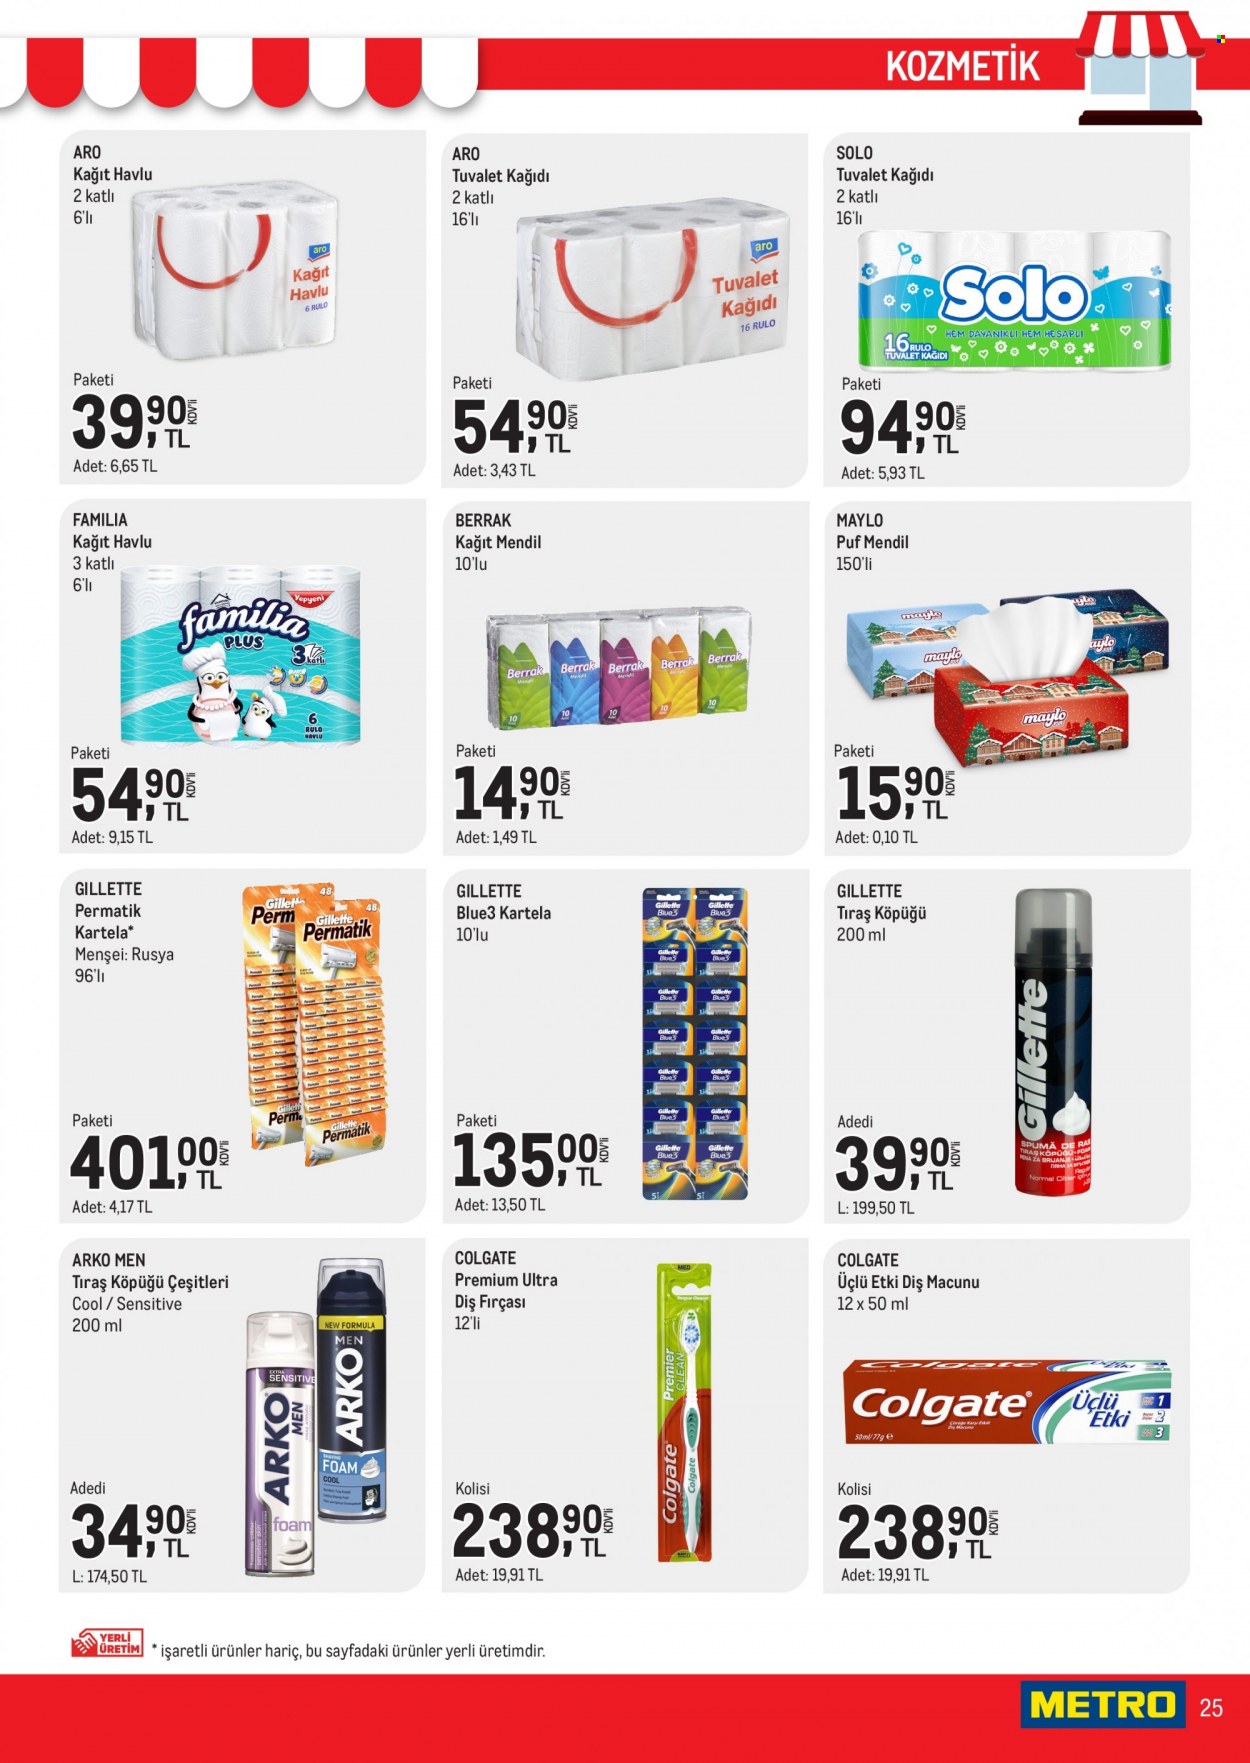 thumbnail - Metro aktüel ürünler, broşür  - 1.12.2023 - 1.31.2023 - Satıştaki ürünler - tıraş köpüğü, Colgate, diş fırçası, diş macunu, Gillette, fırça. Sayfa 25.